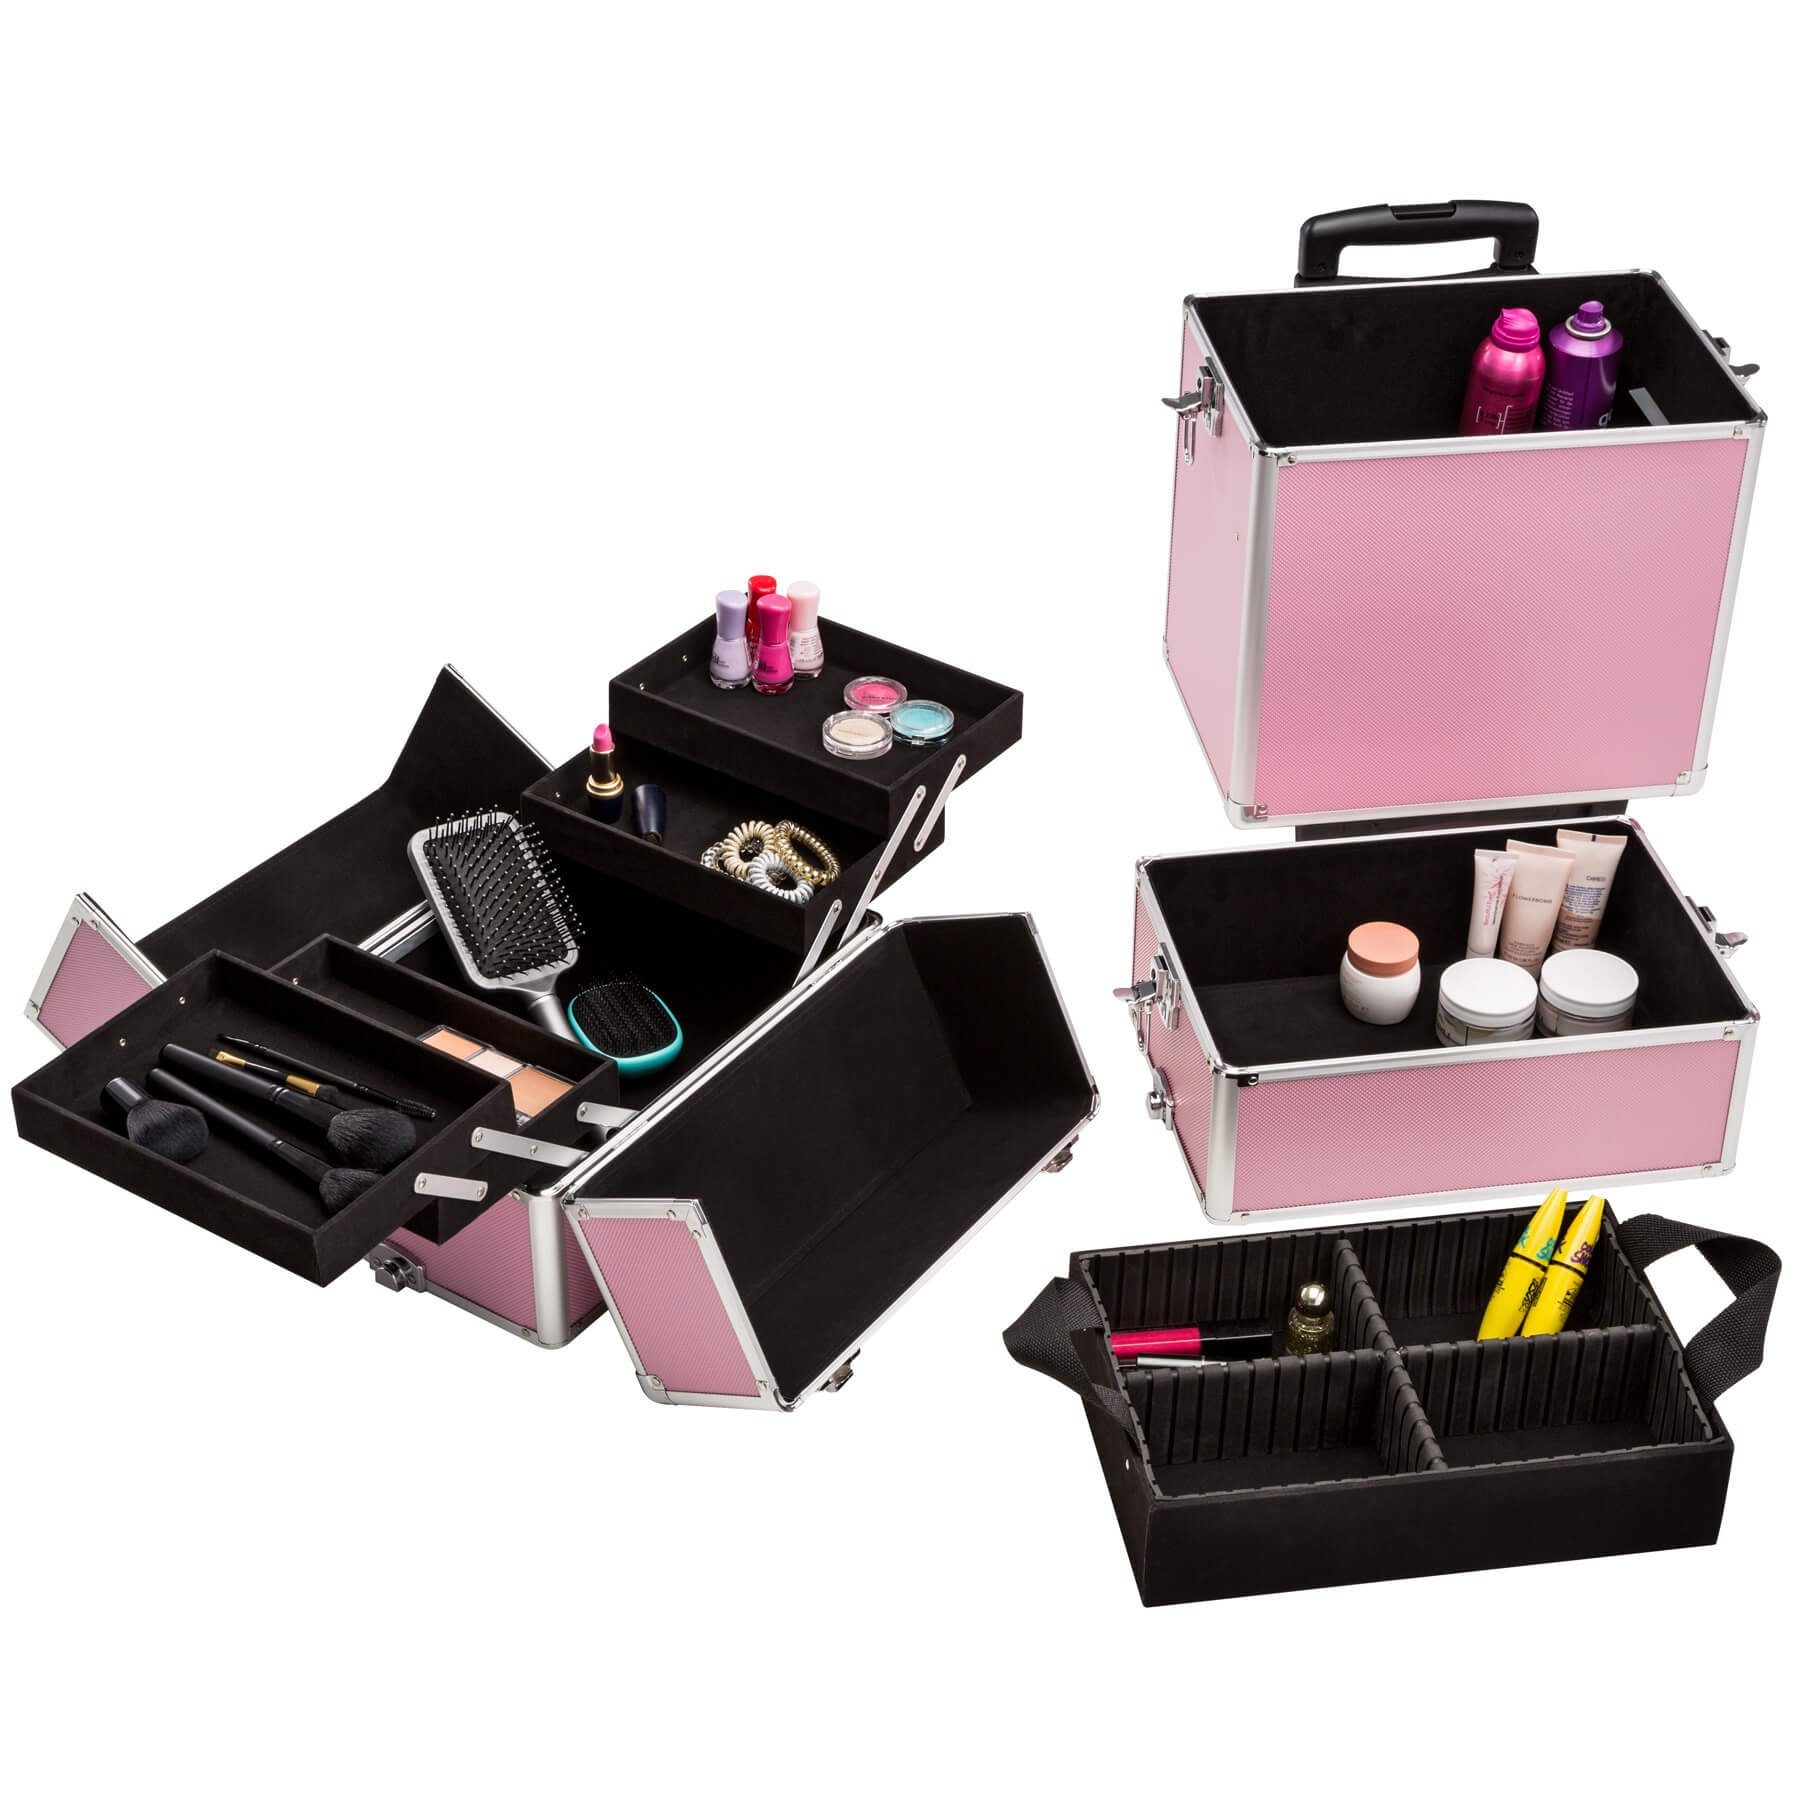 2 pink Rollen, Koffer erweiterbar 3 Etagen, tectake mit Kosmetiktrolley